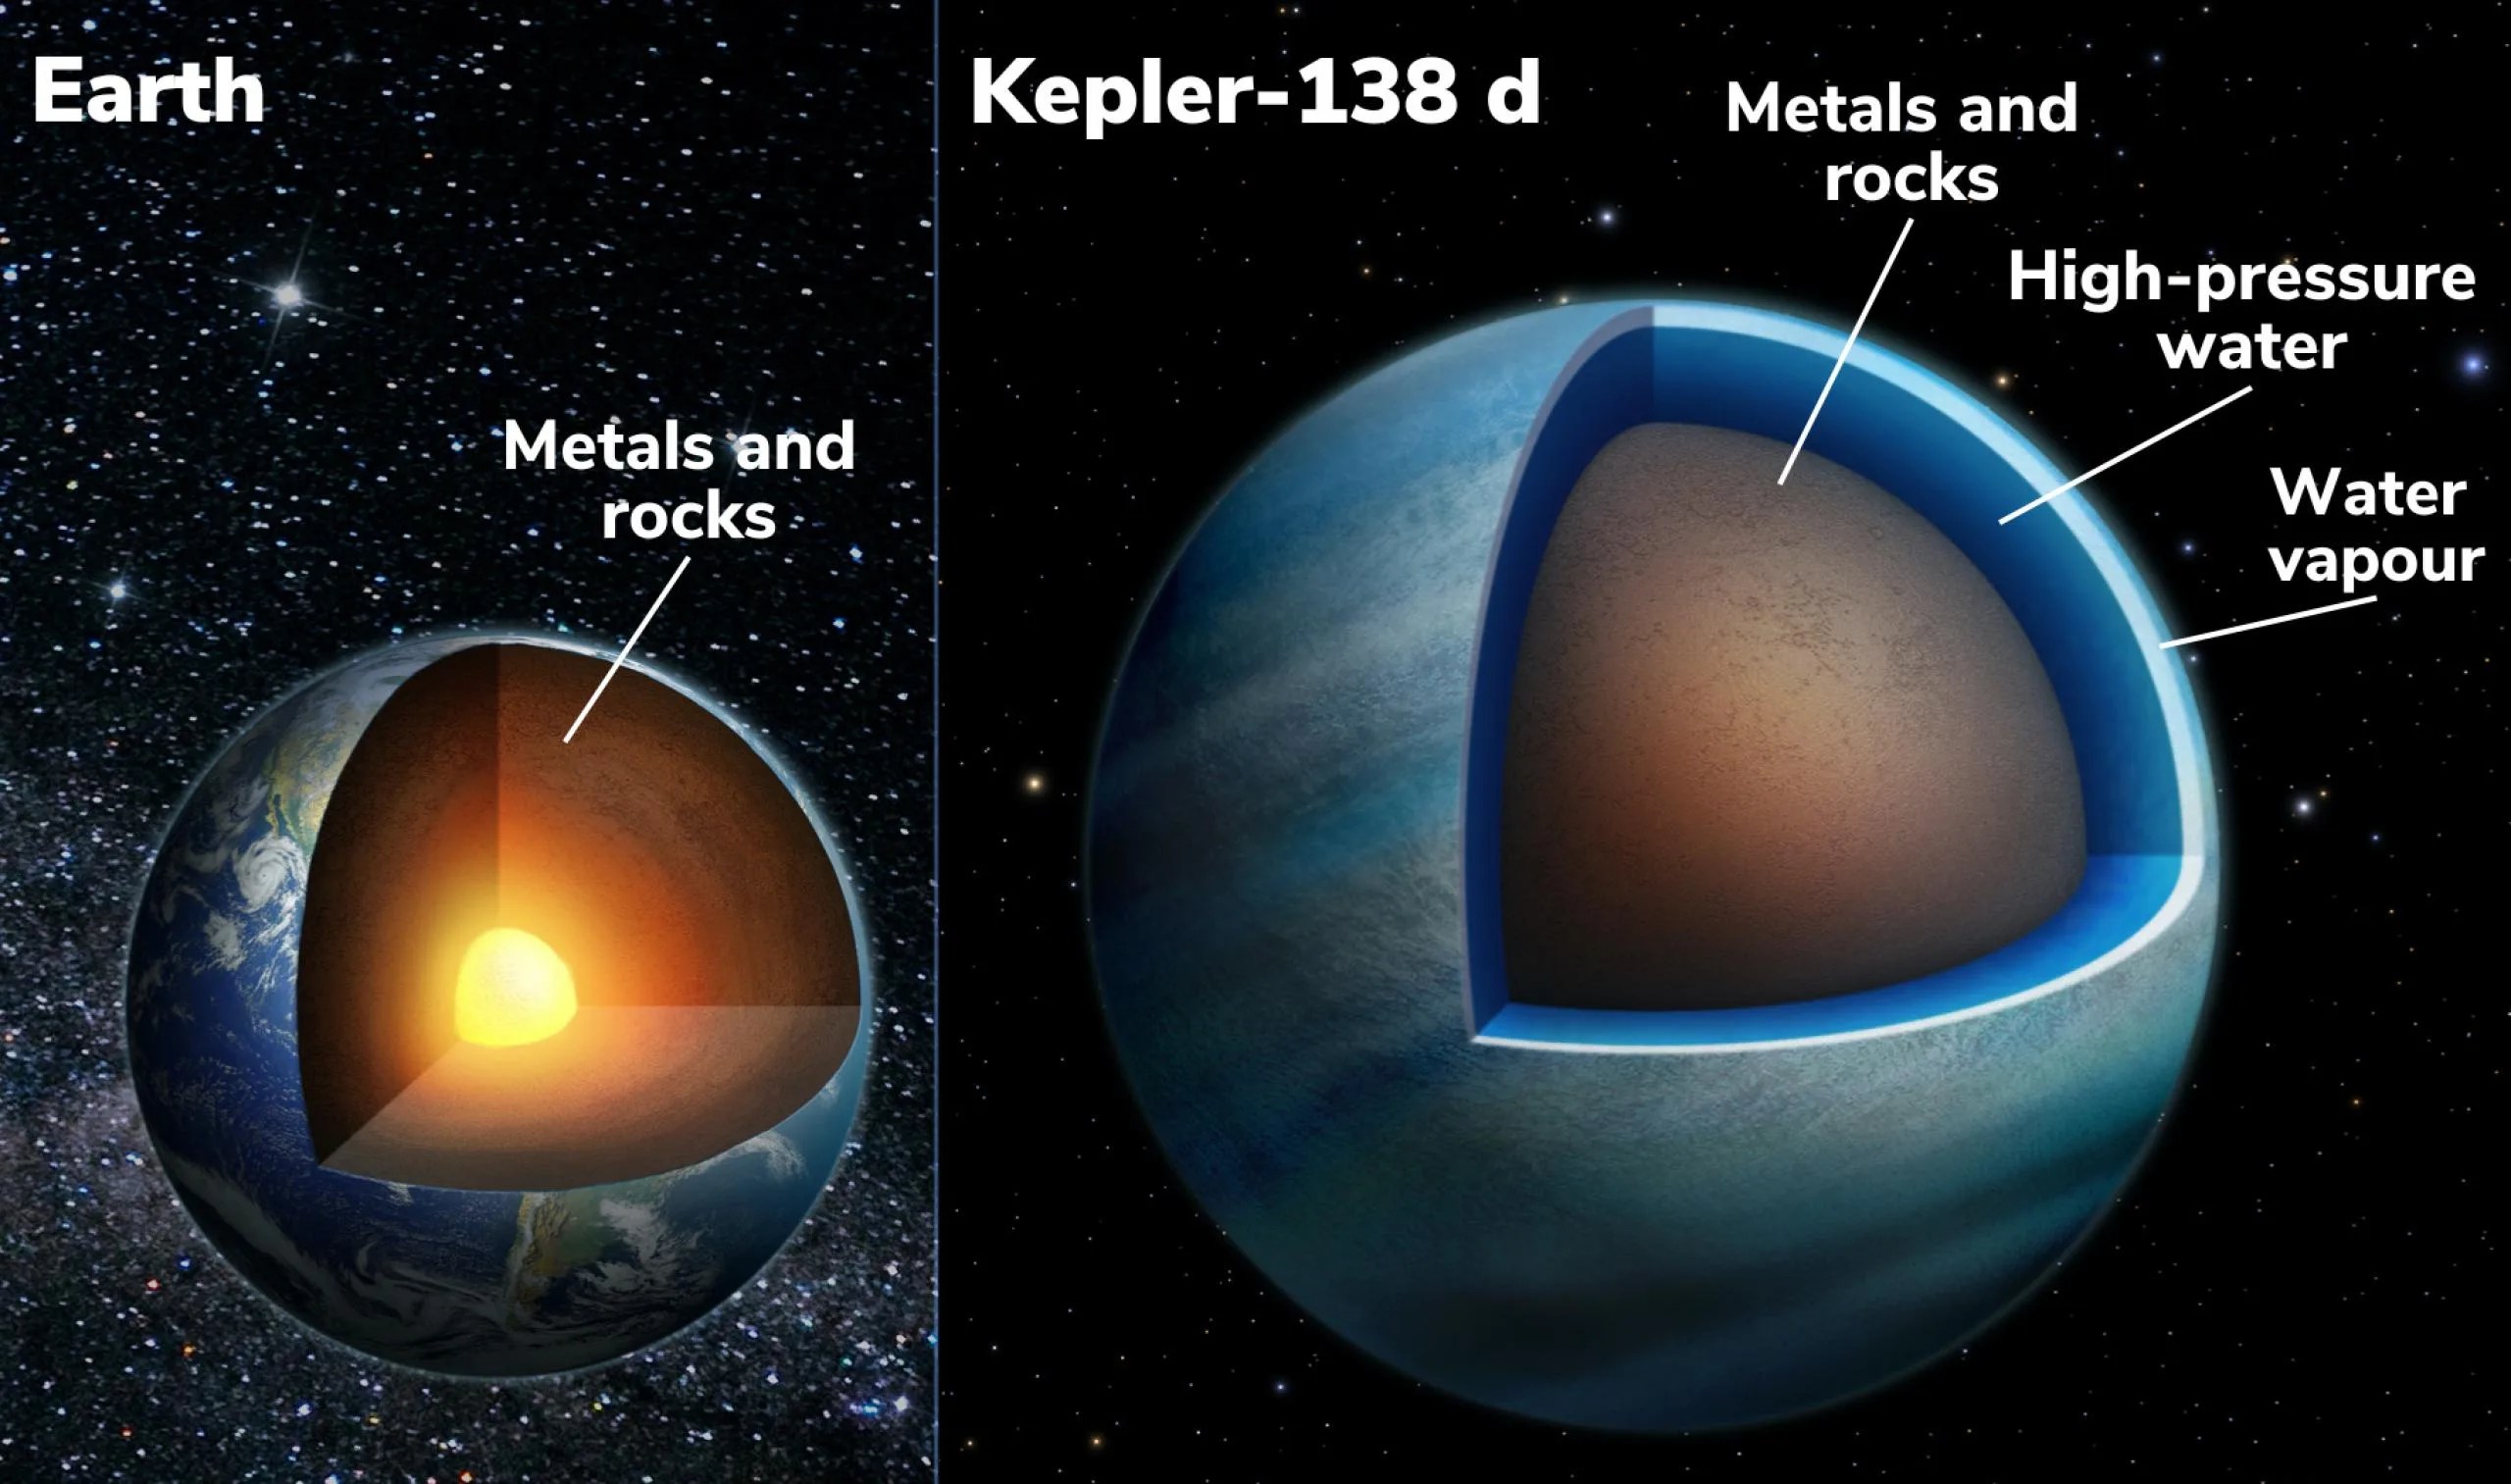 Esta es una ilustración que muestra una sección transversal de la Tierra (izquierda) y el exoplaneta Kepler-138 d (derecha). Al igual que la Tierra, este exoplaneta tiene un interior compuesto por metales y rocas (parte marrón); pero Kepler-138 d también tiene una gruesa capa de agua a alta presión en diversas formas: agua supercrítica y potencialmente líquida en lo profundo del planeta y una envoltura extendida de vapor de agua (tonos de azul) por encima de ella.